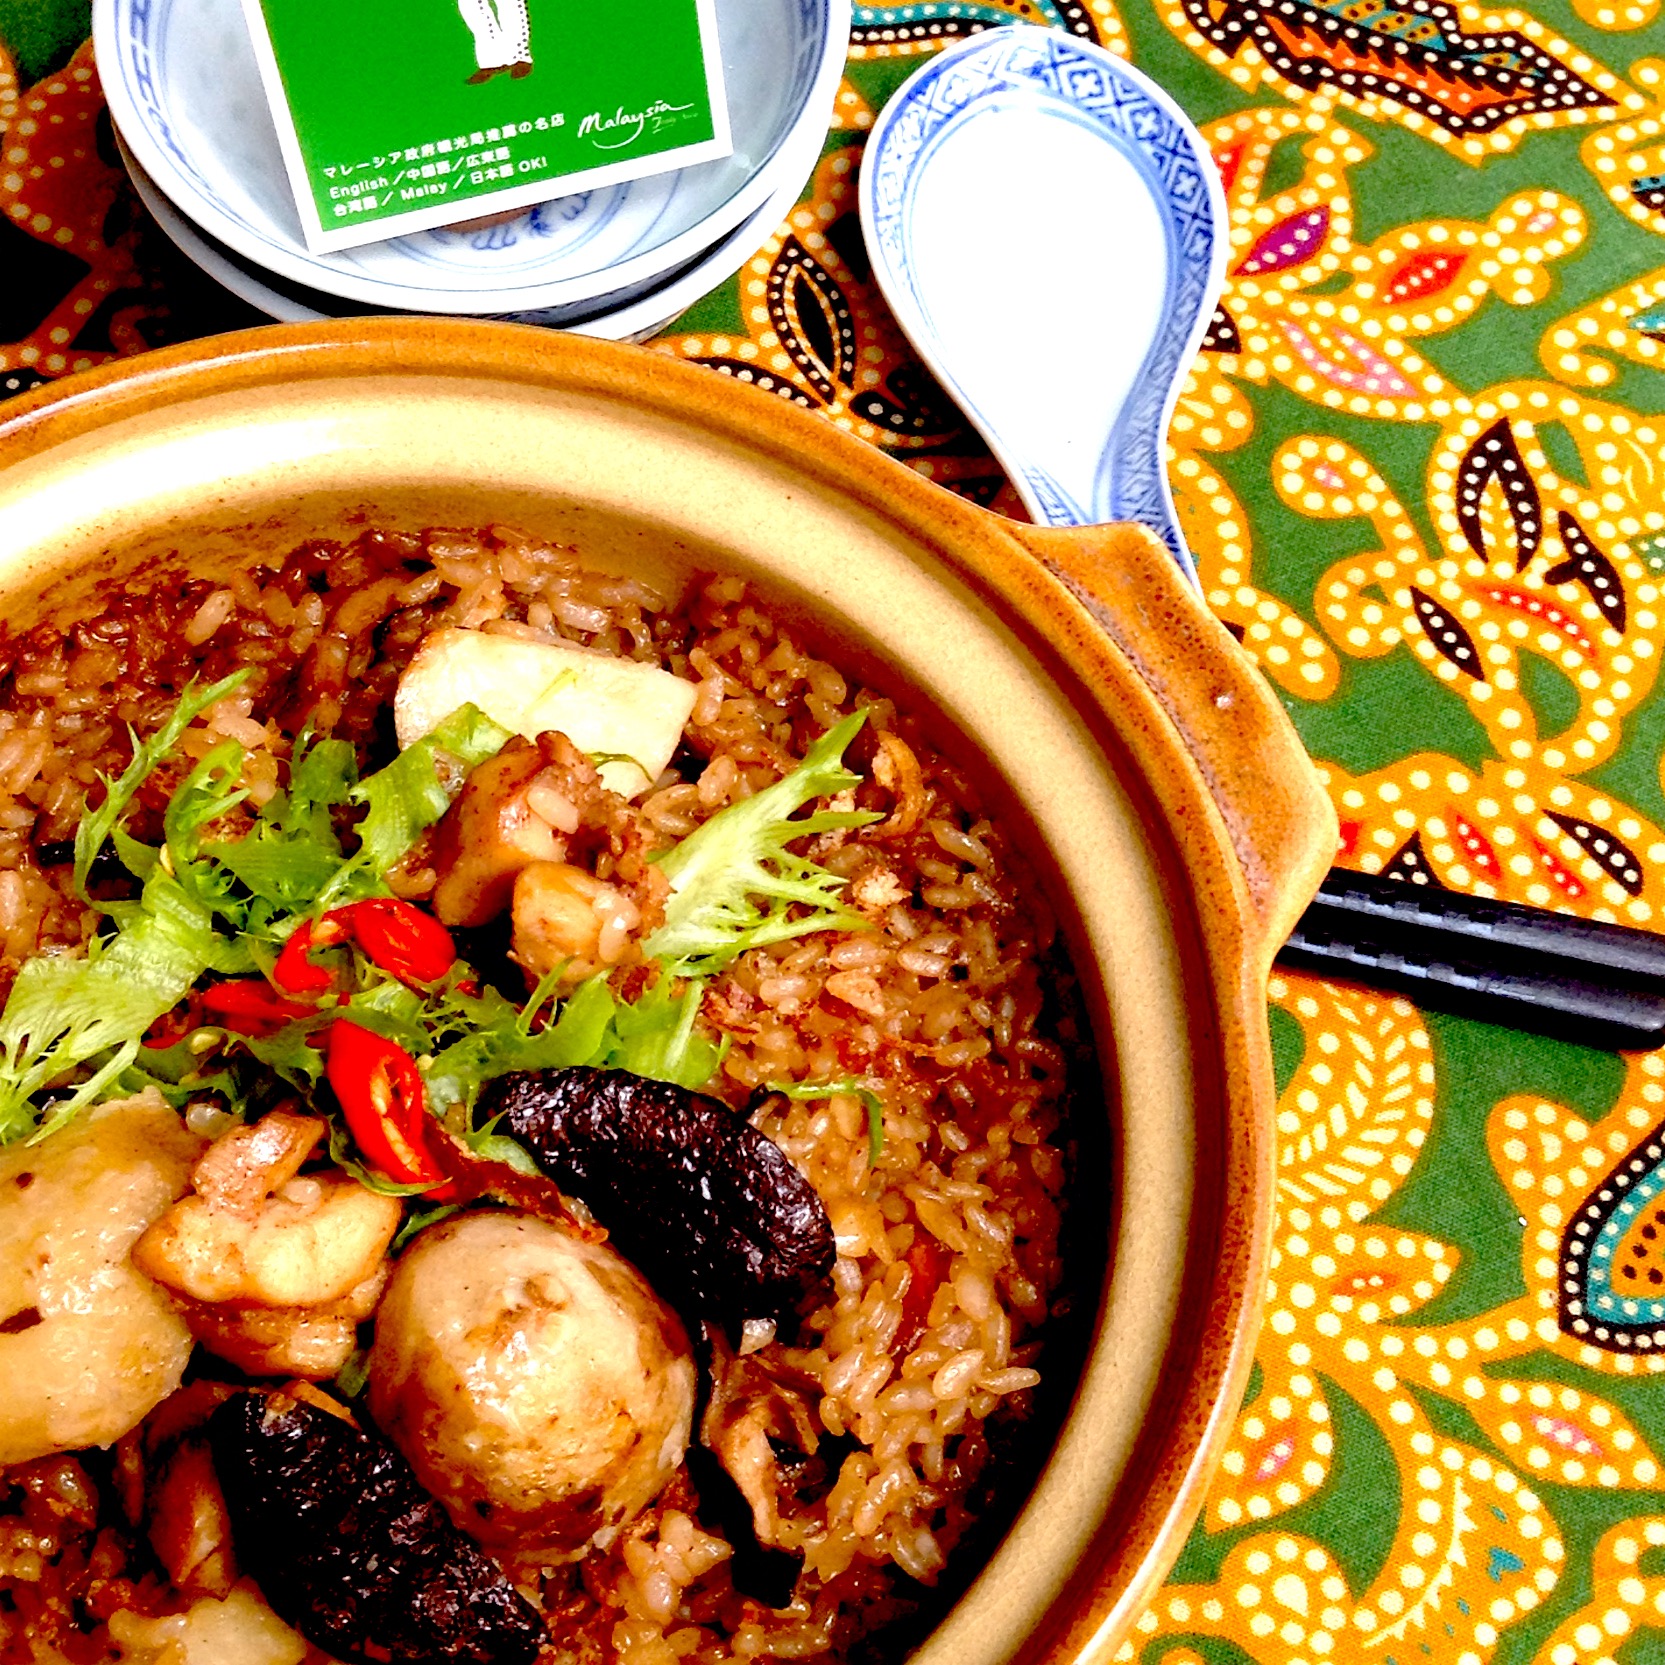 クレイポットライス。鶏肉と里芋と椎茸をアジアの調味料で。土鍋炊きだからお米ほっこり、家人にっこり。
#ヤムライス